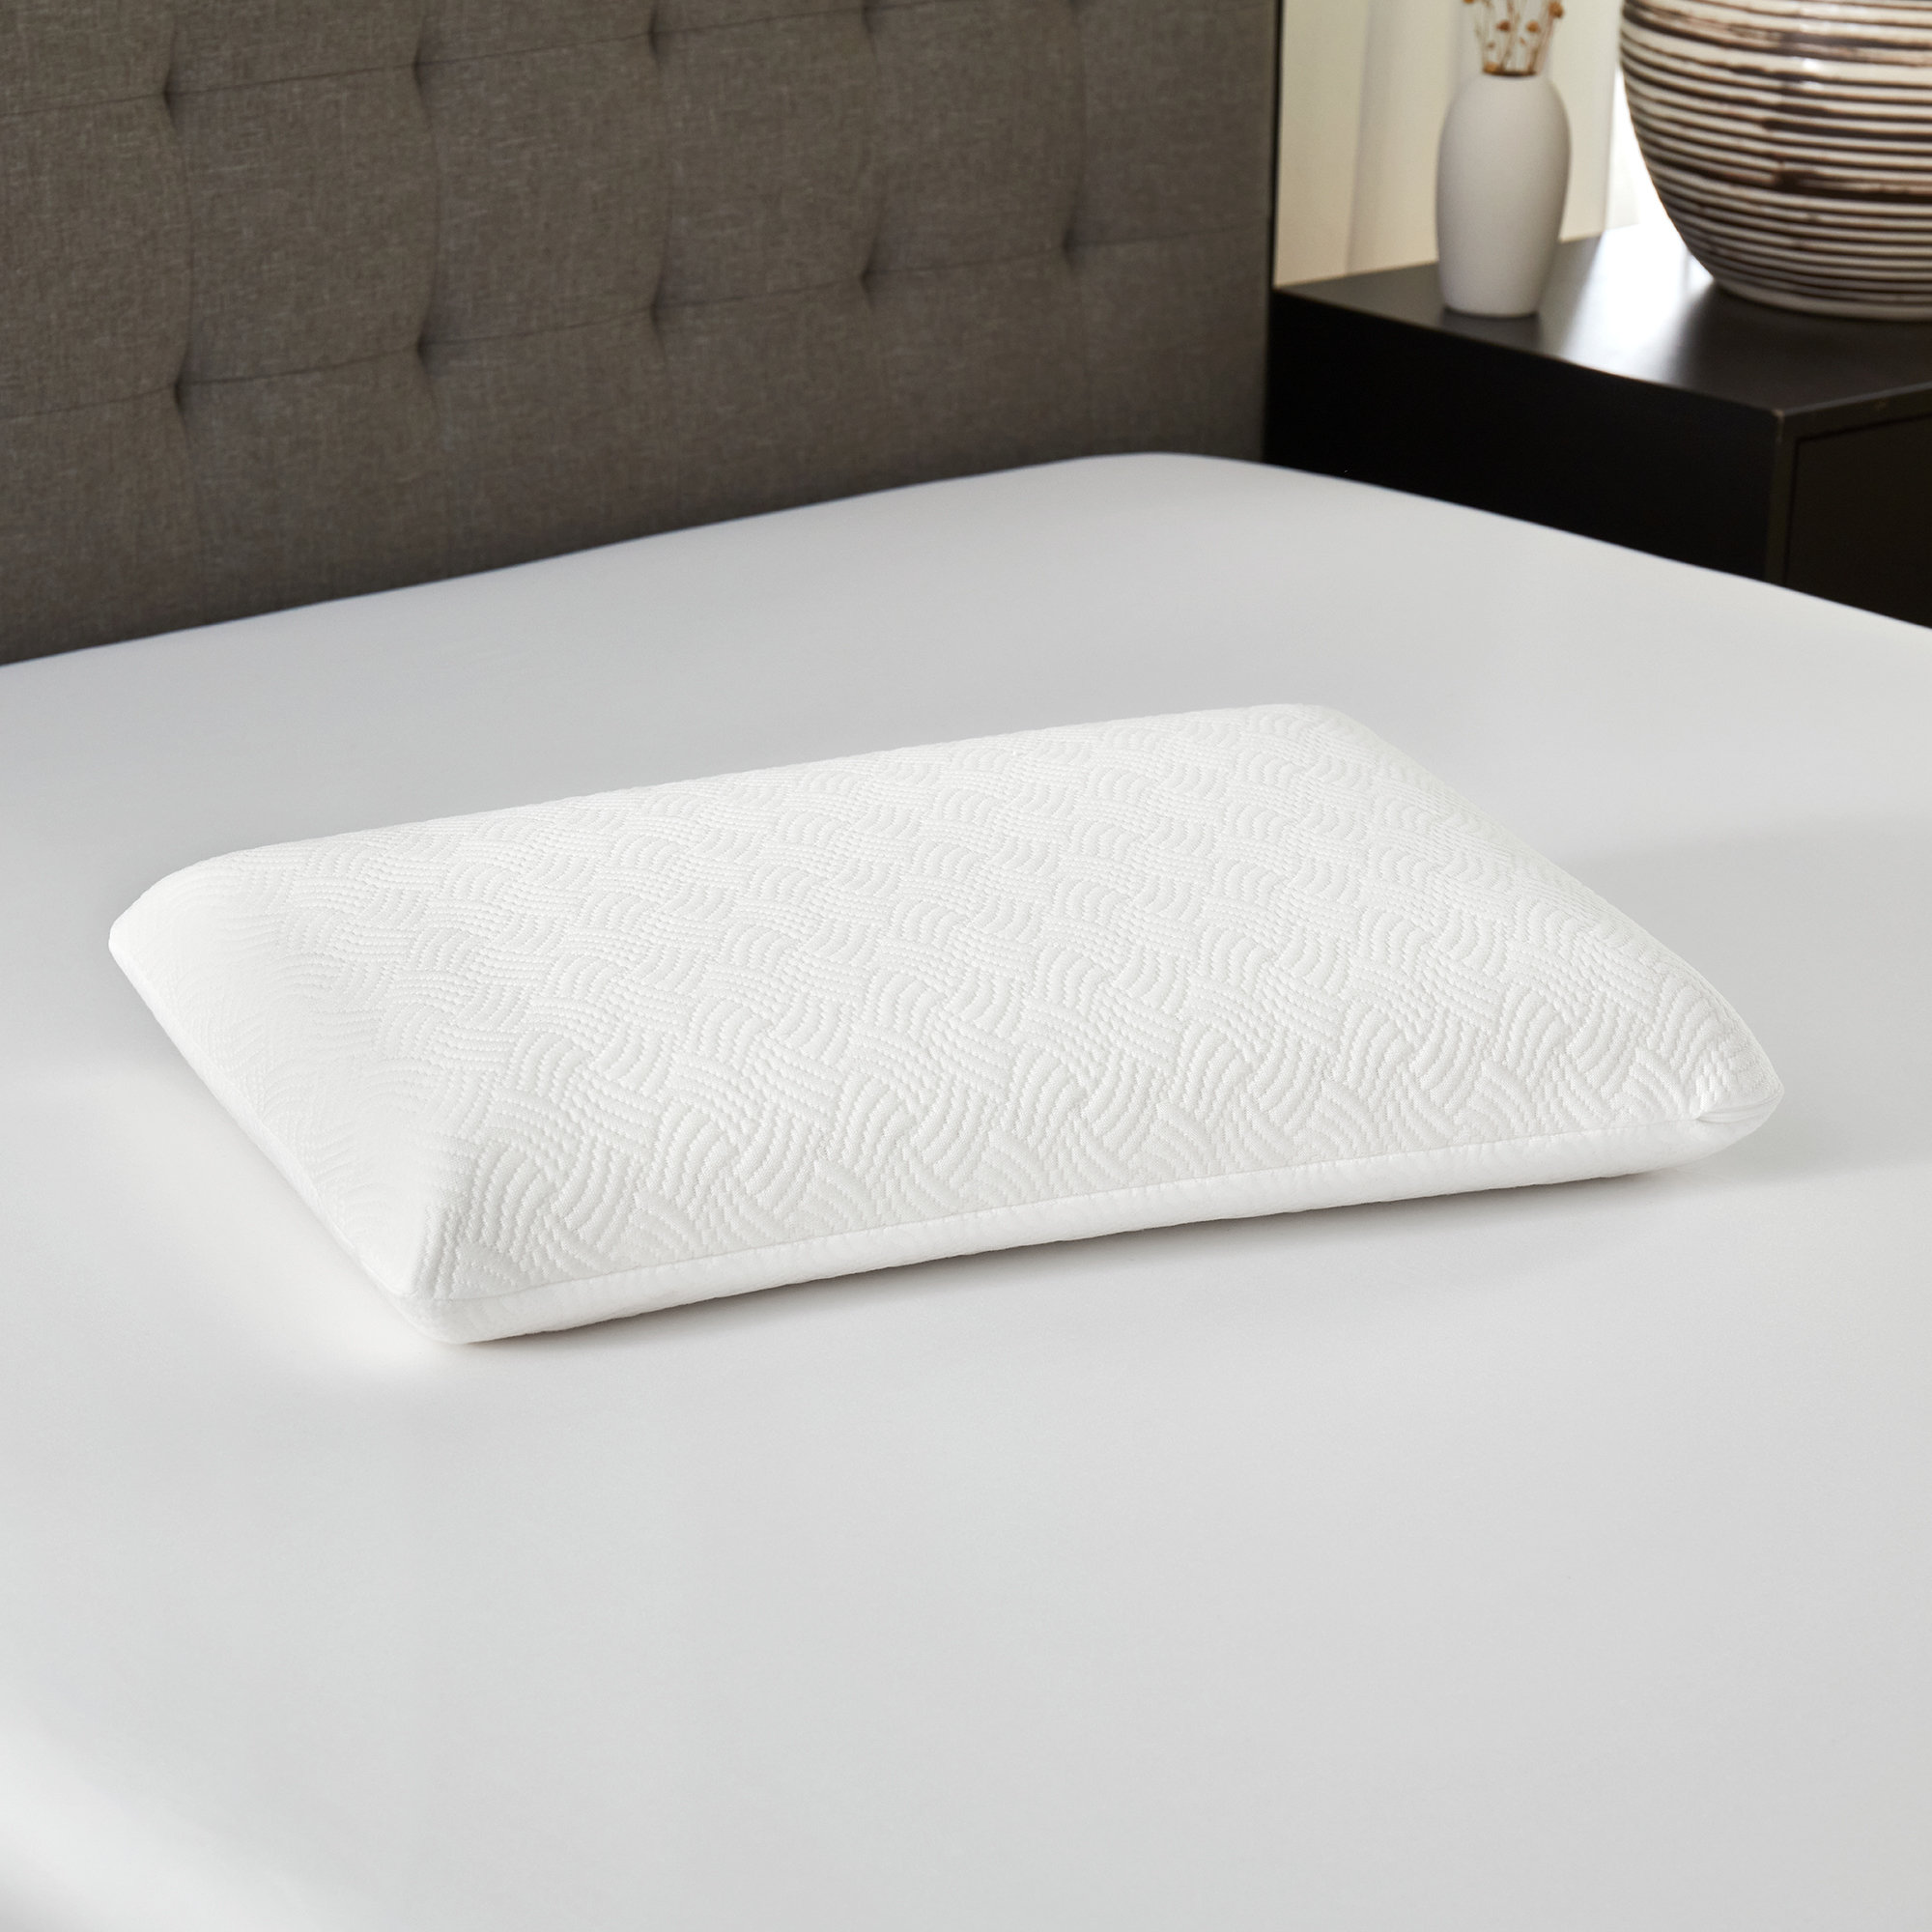 https://assets.wfcdn.com/im/47479146/compr-r85/2436/243675955/grainola-classic-memory-foam-conventional-pillow.jpg